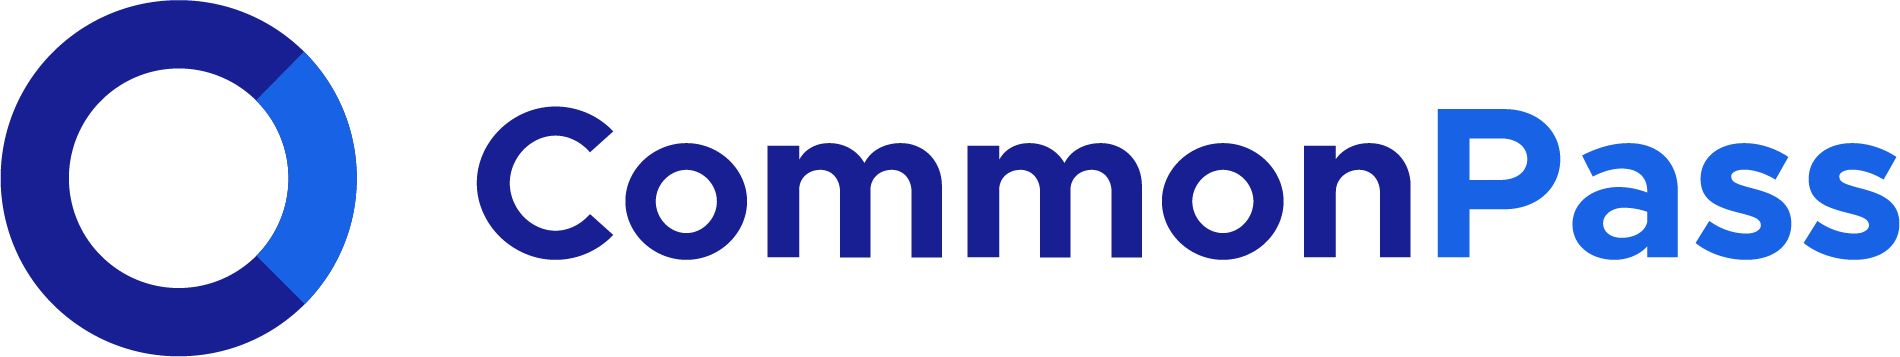 CommonPass-Logo